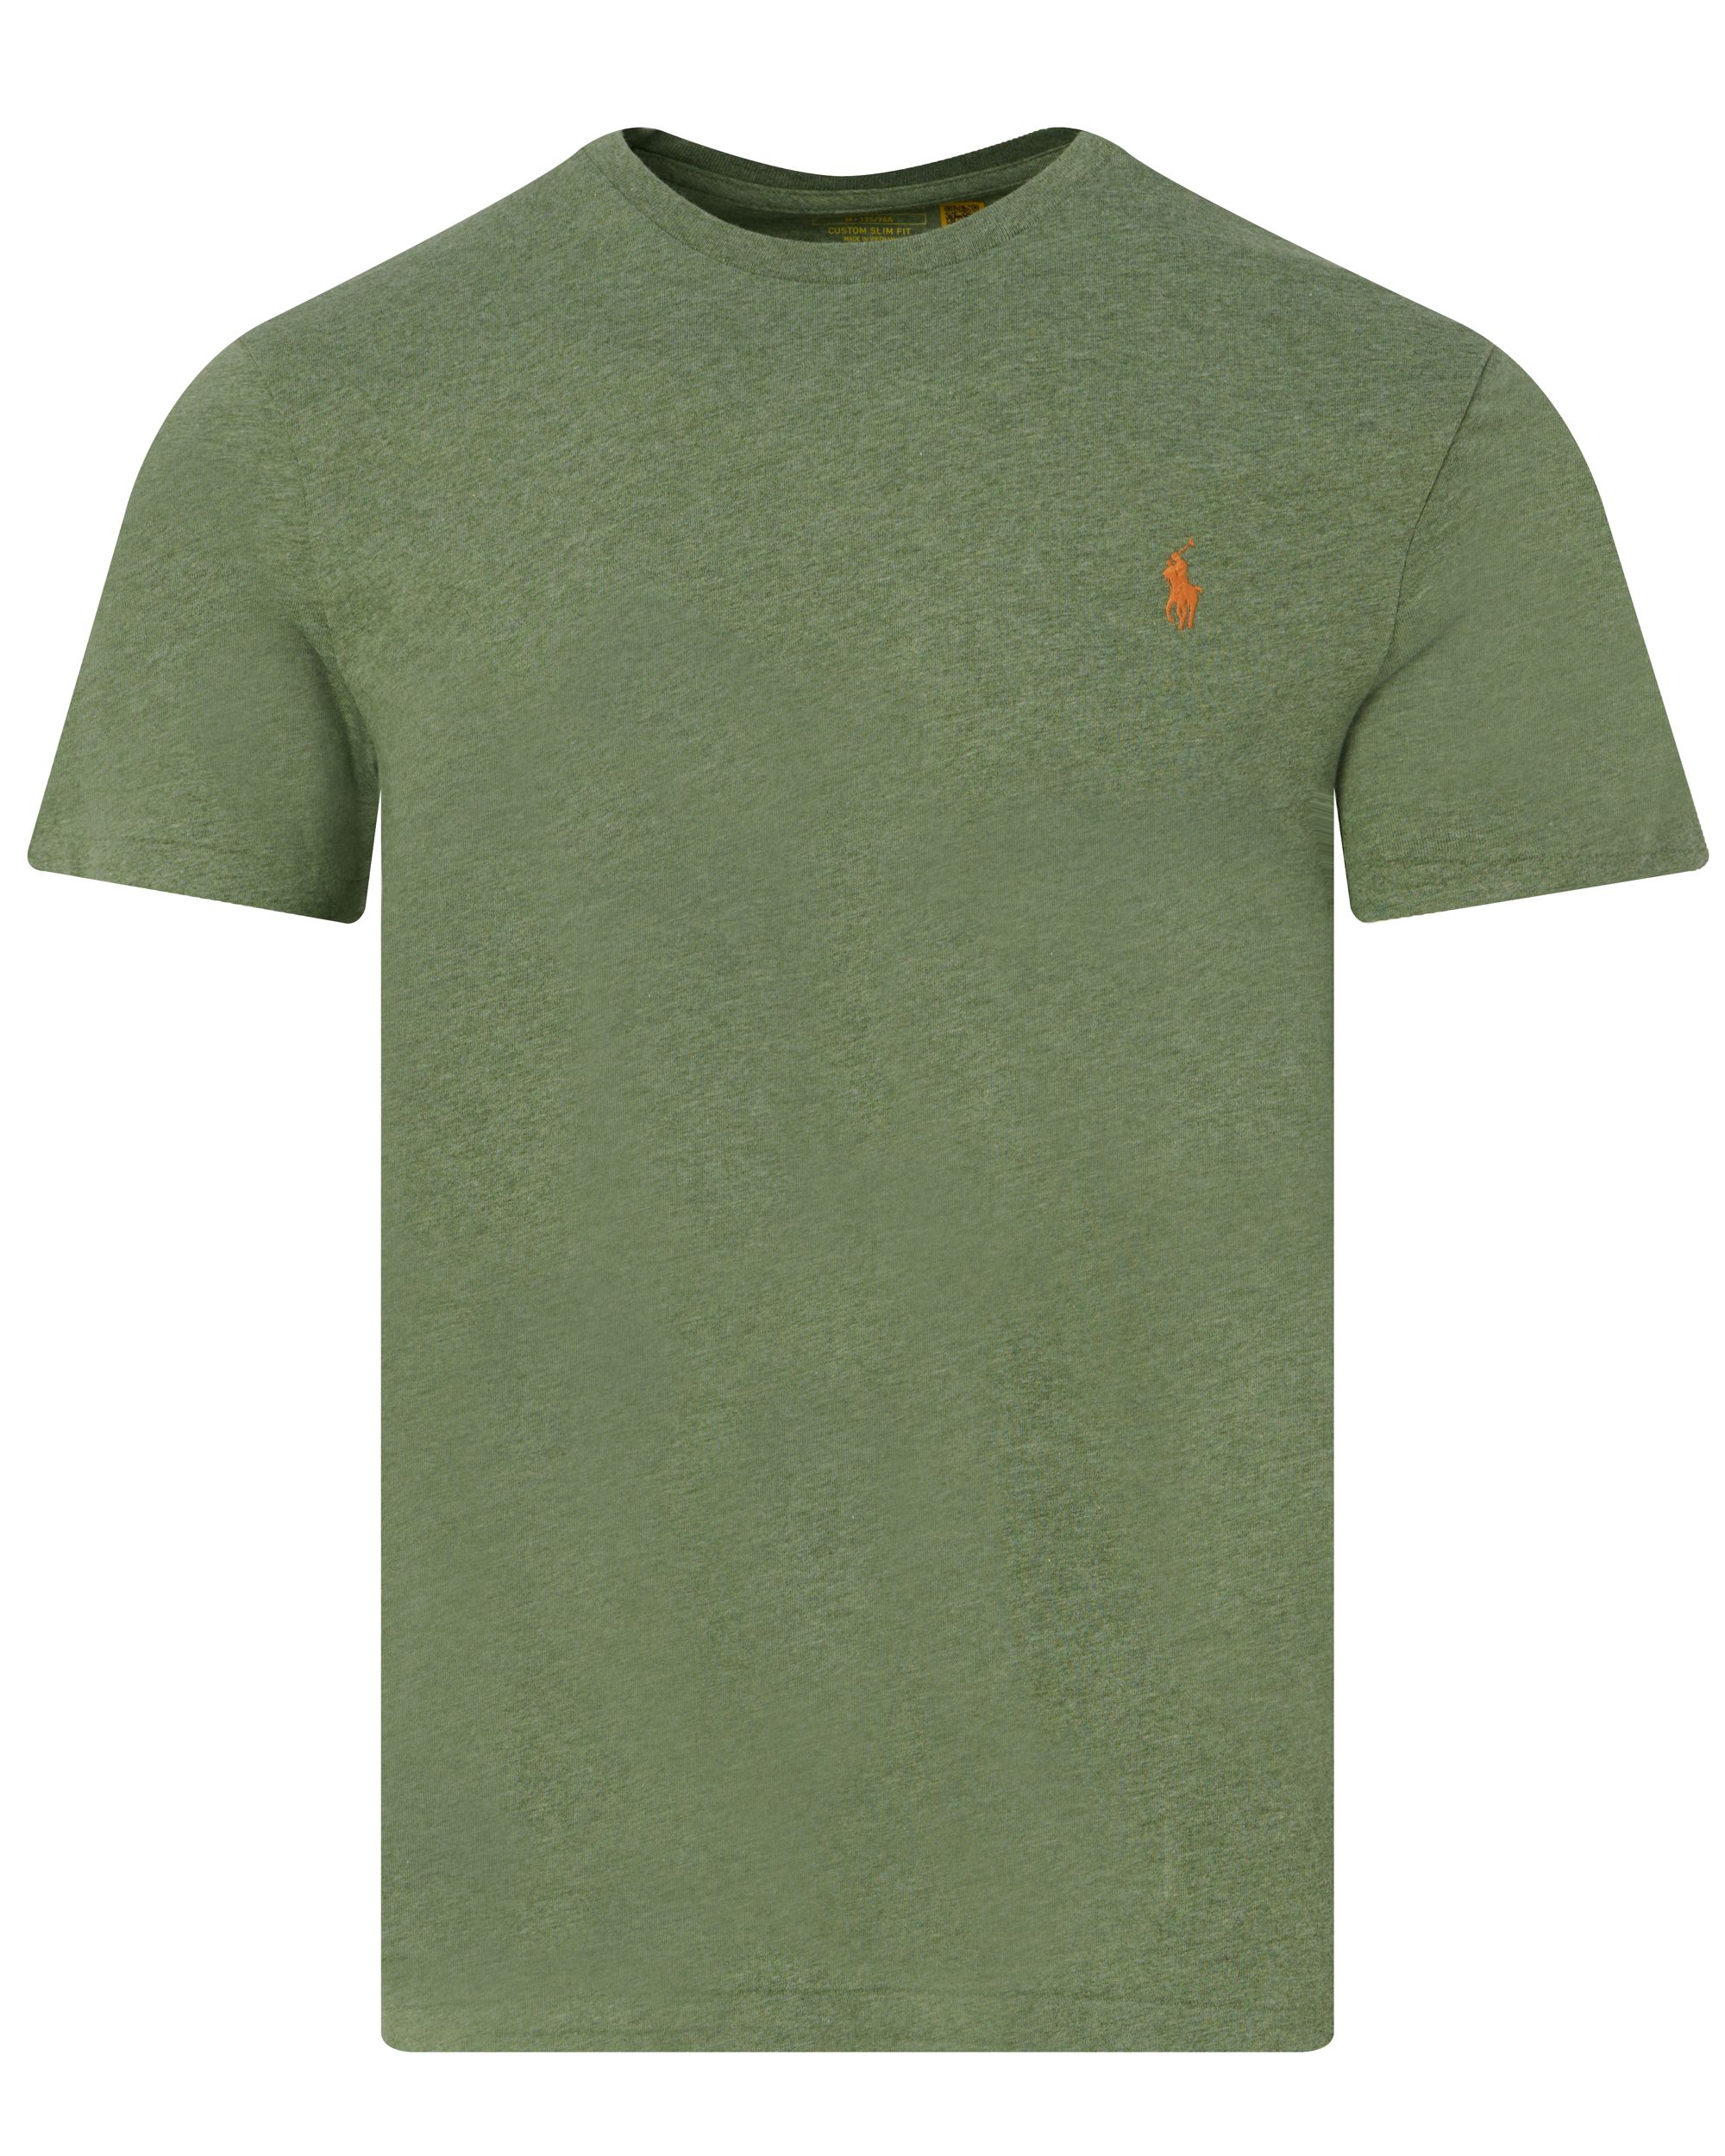 Polo Ralph Lauren T-shirt KM Groen 095288-001-L